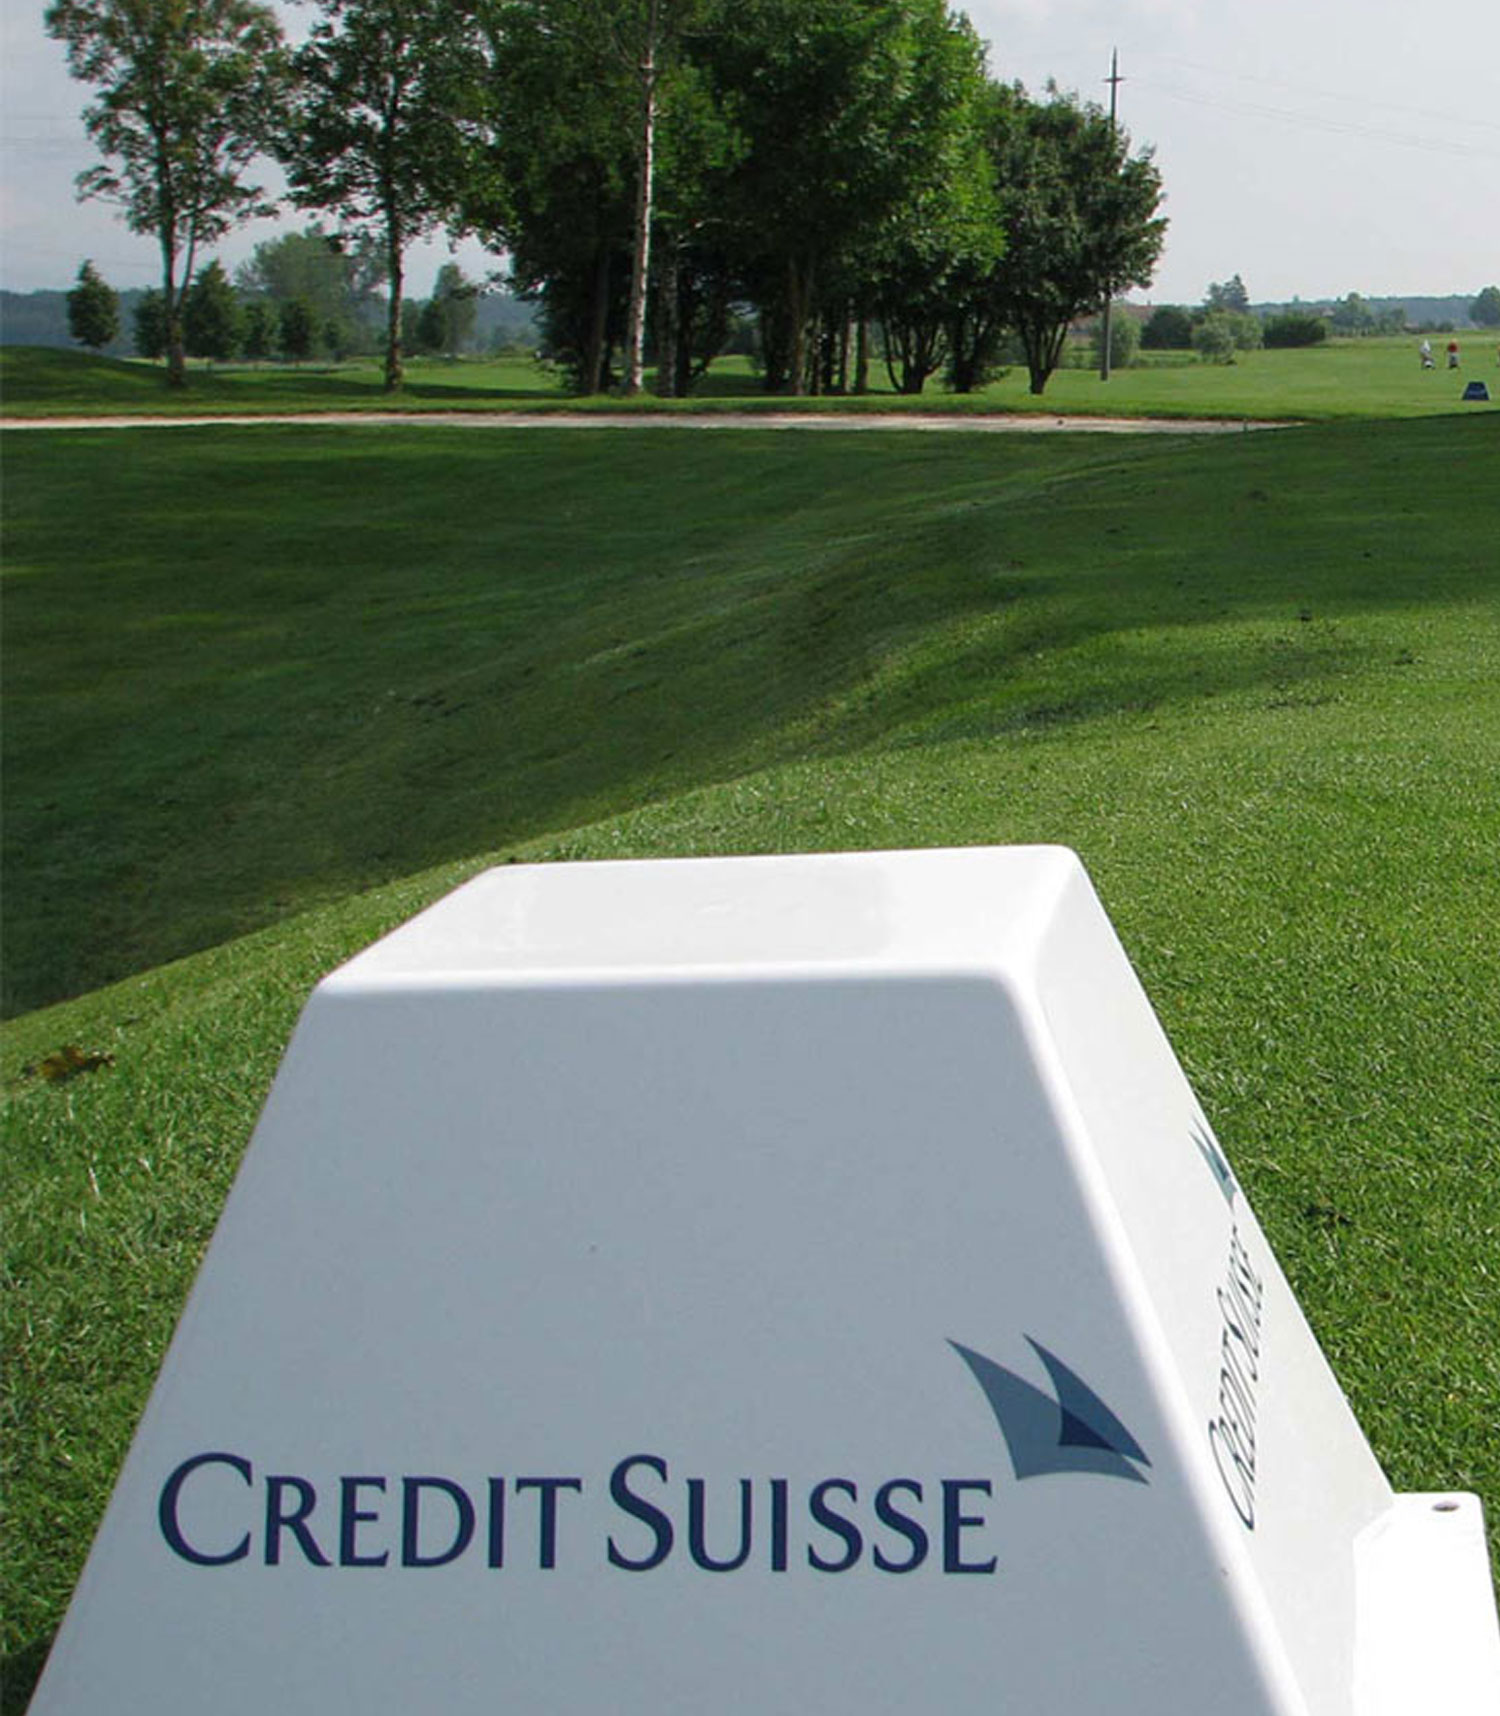 Credit Suisse – Golfturniere